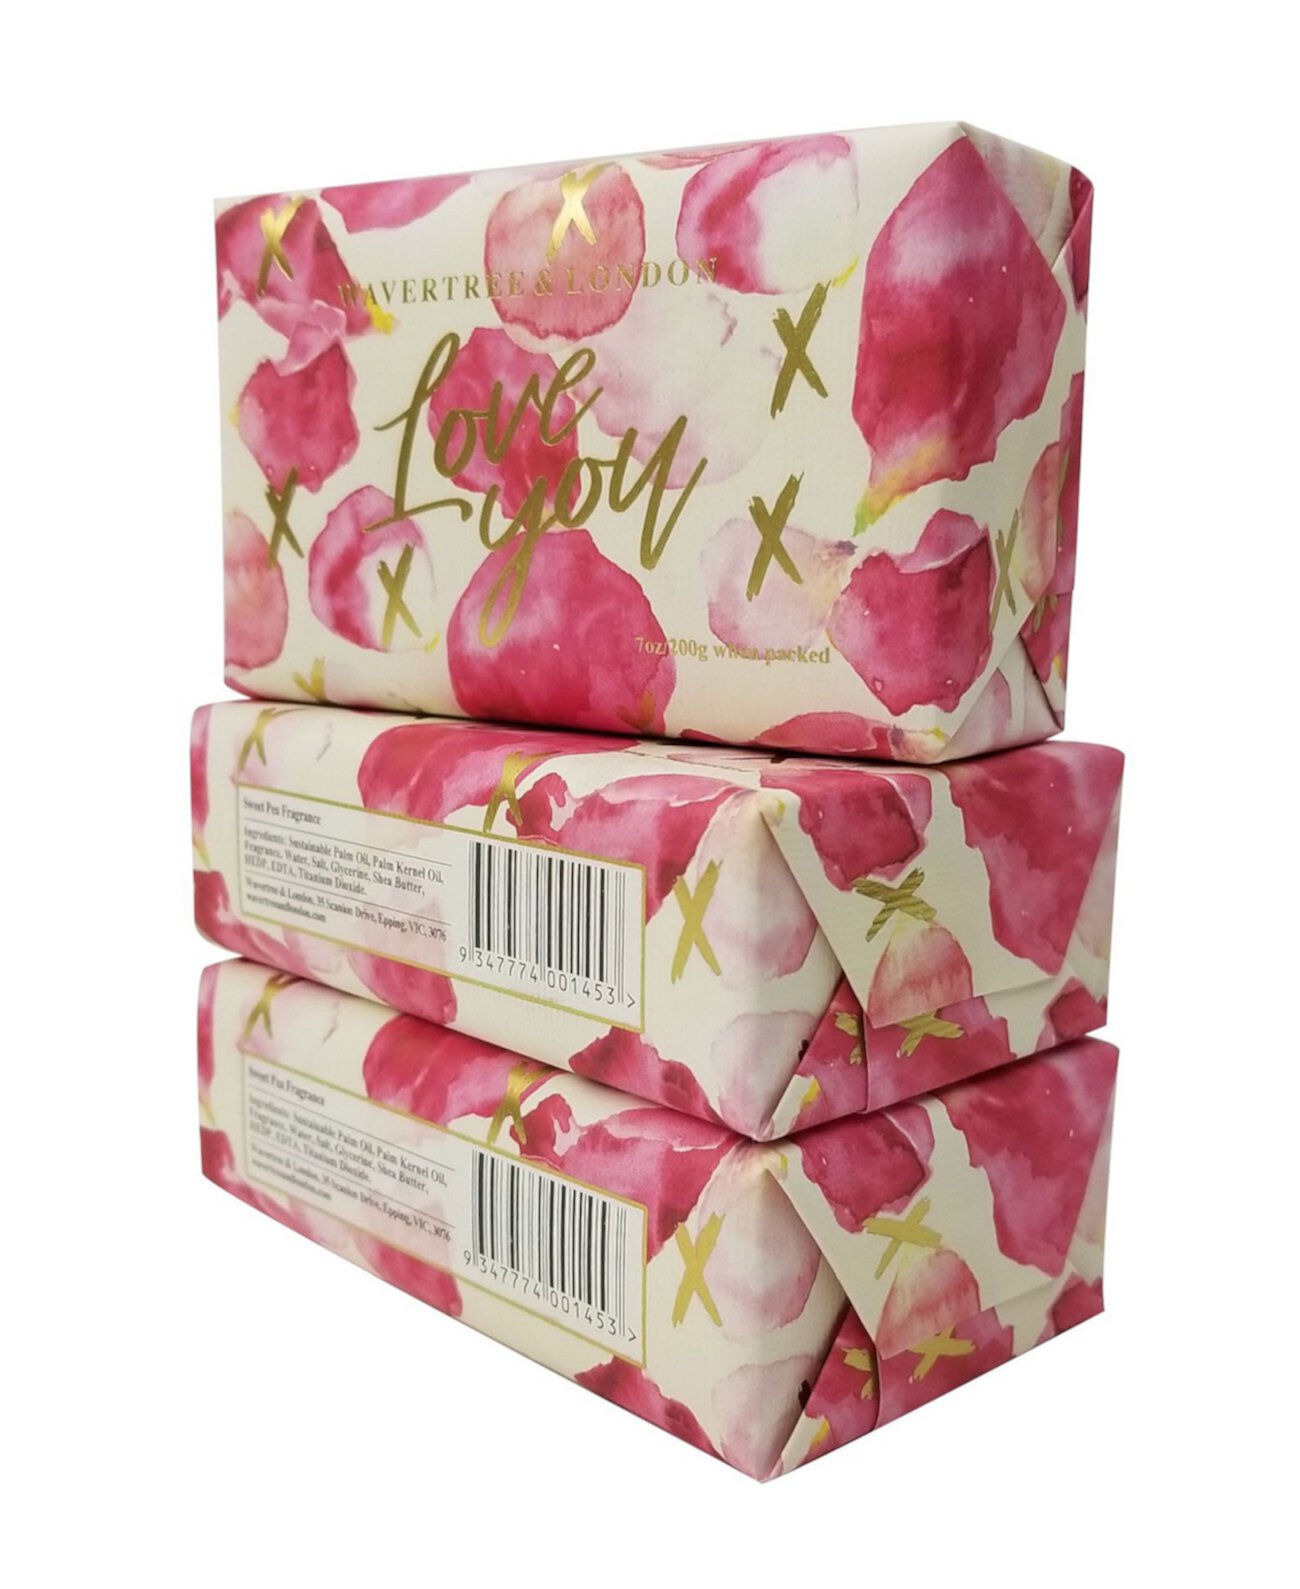 Love You - Petals - кусковое мыло, упаковка из 3 штук по 7 унций каждая Wavertree & London